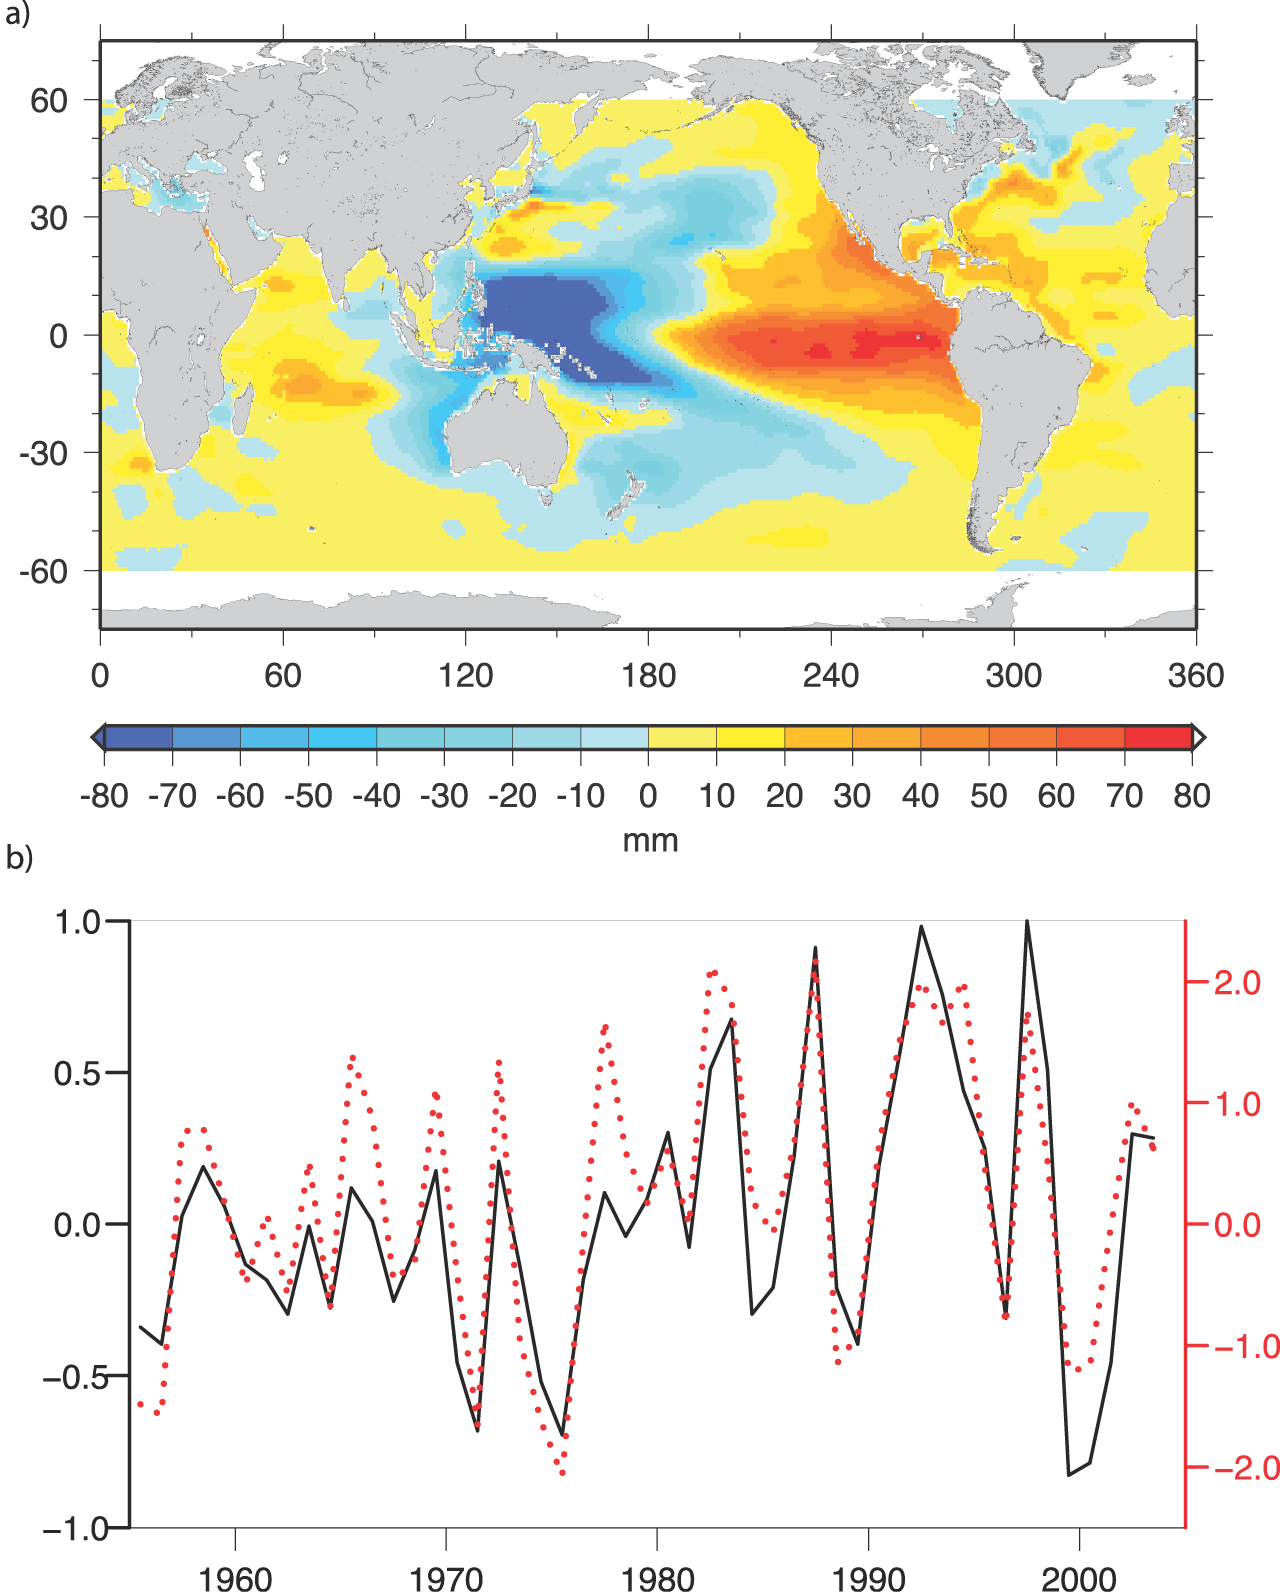 제5장 수면 변동에 많은 물리적 과정들이 관여할 수 있다. 관측 해양의 기후변화와 해수면 결과는 같은 기간 동안의 온도 변화에 따른 해수면 변화추 세의 공간적 분포와 매우 유사한 양상을 보인다(그림 5.20과 5.5.4.1 부피 변화에 의한 해수면 변화 그림 5.16b를 비교해 볼 것).